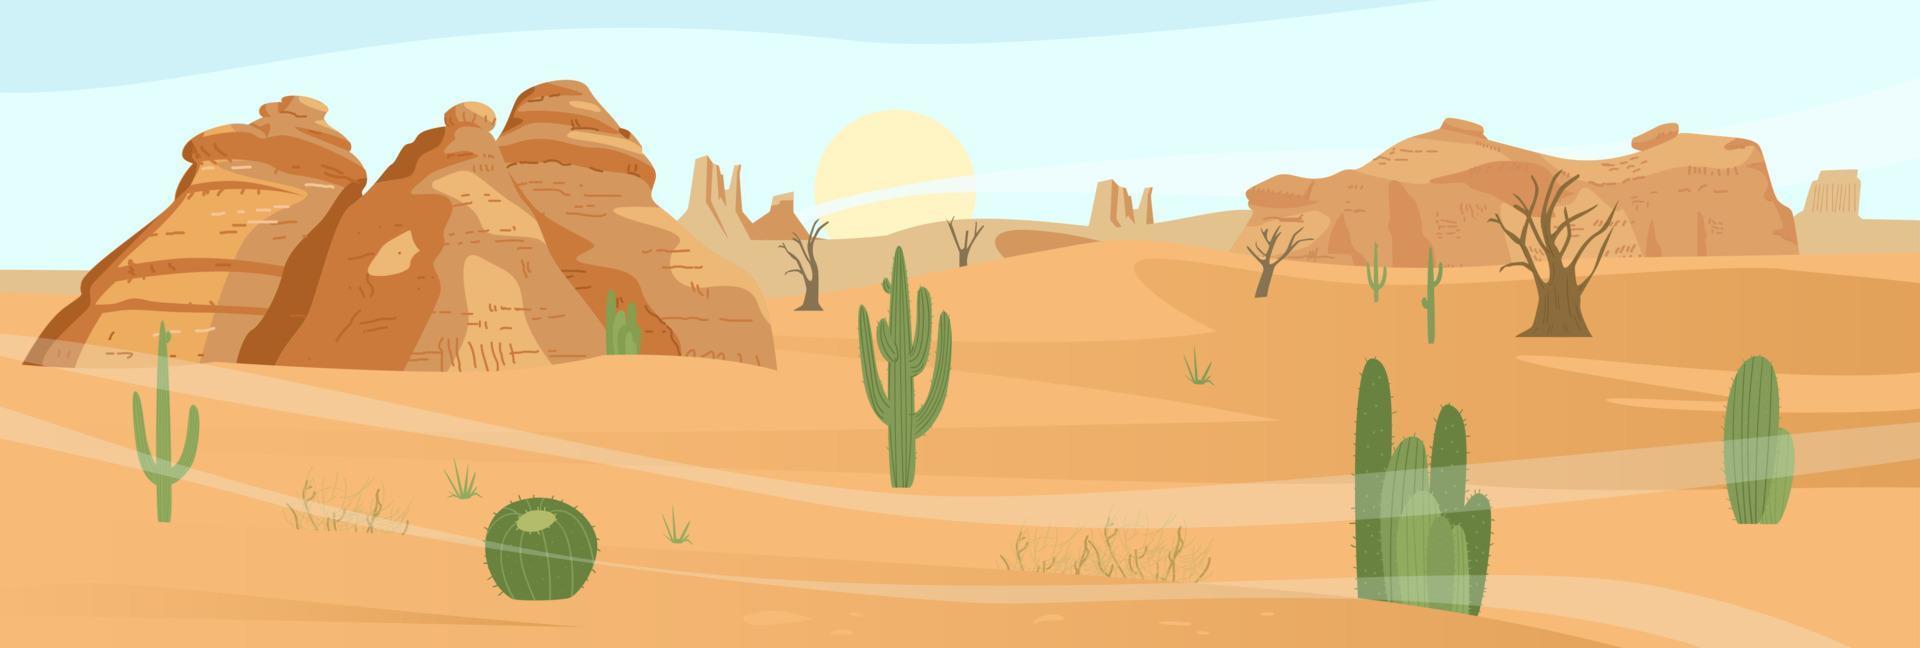 paisaje desértico con cactus y rocas de arena. ilustración vectorial plana. vector